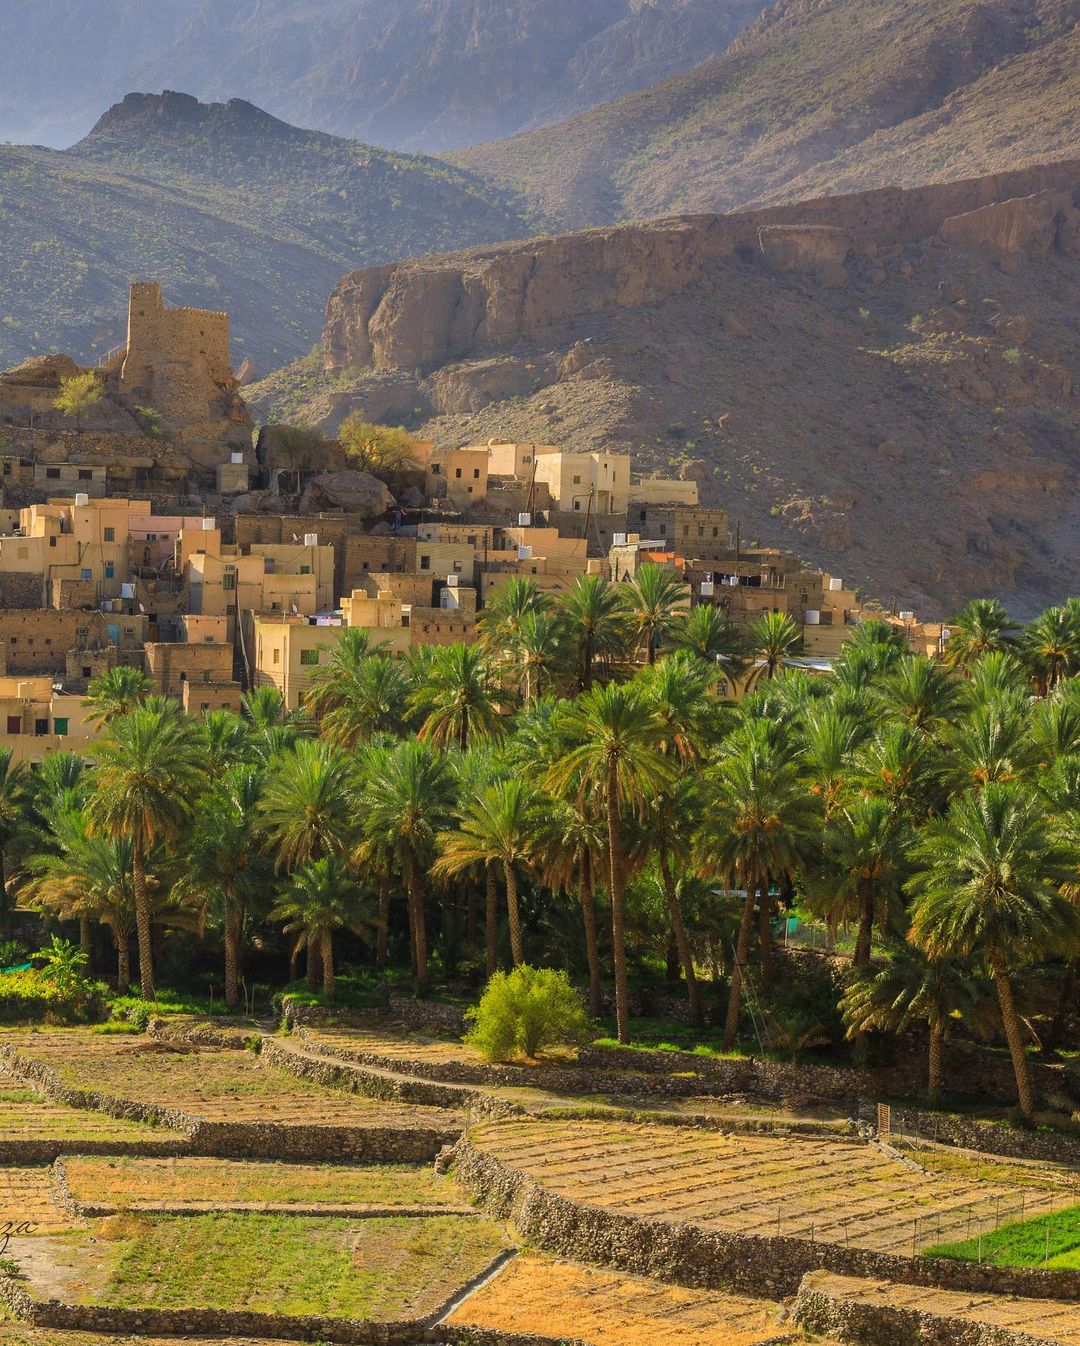 قرية بلد سيت الجبلية فى سلطنة عمان (6)